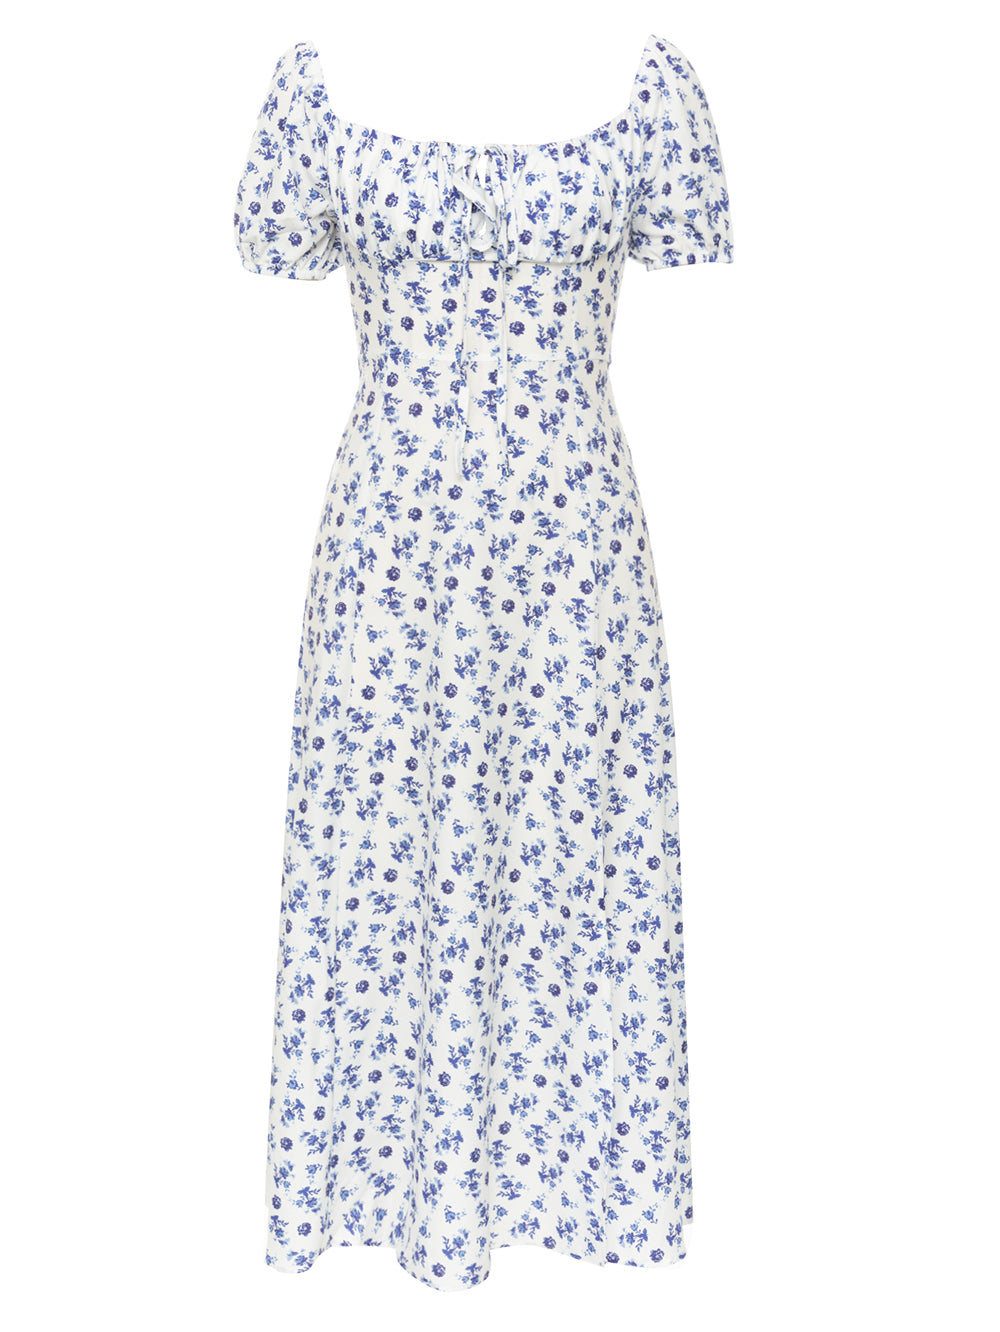 Blue White Bodycon Dress HB00953